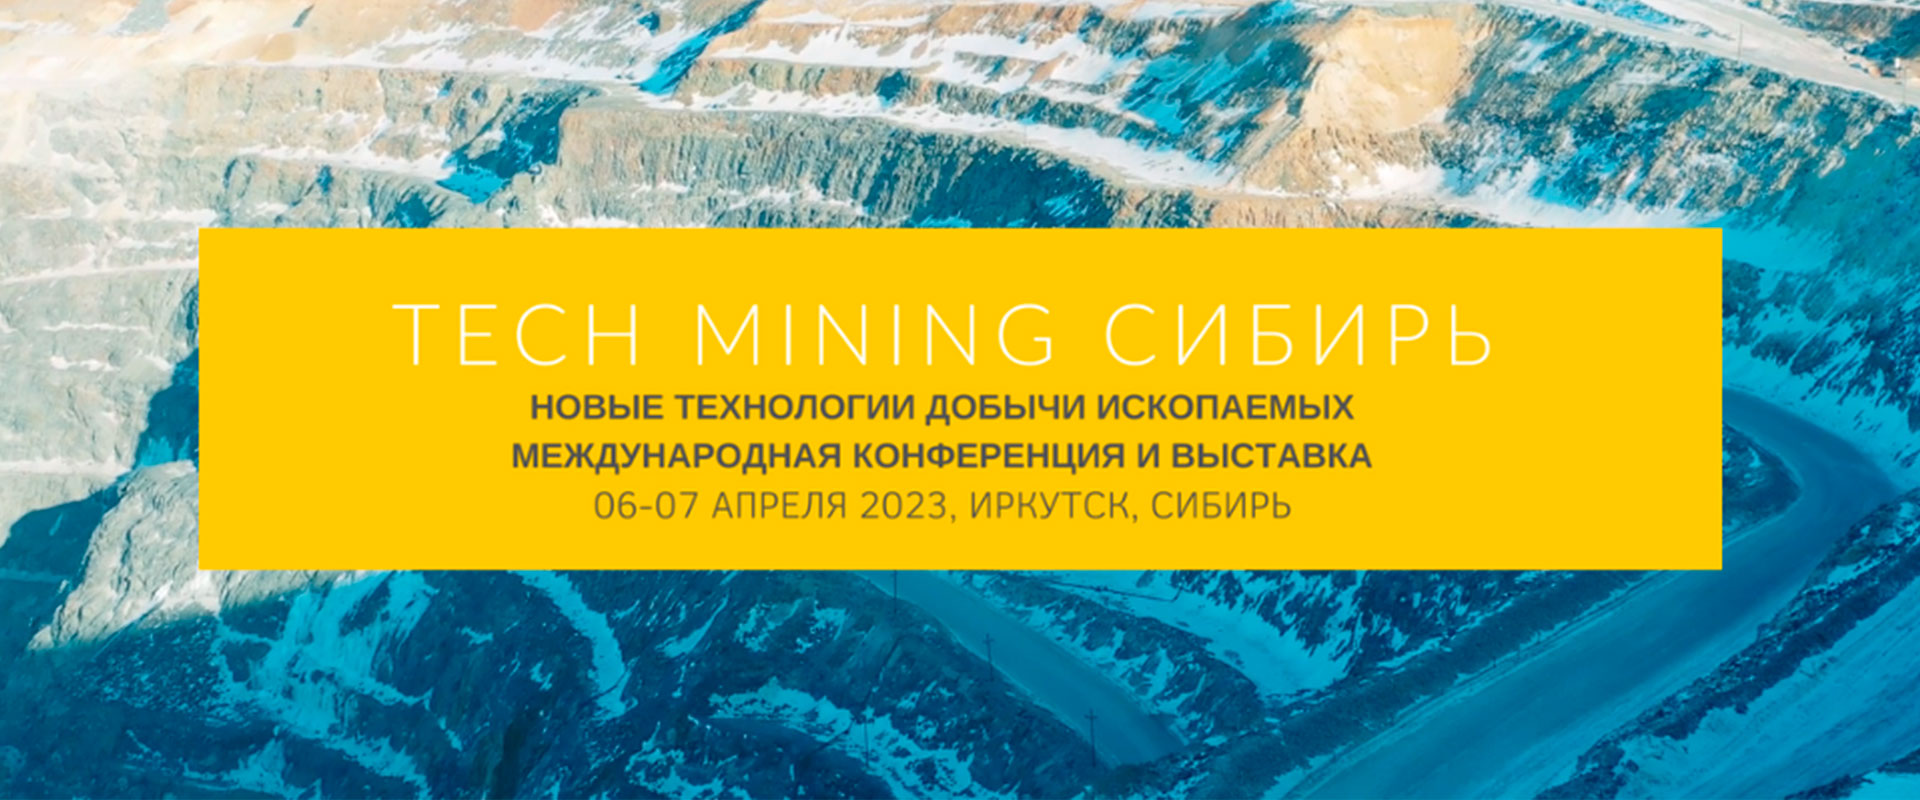 Конференция Tech Mining Siberia 2023